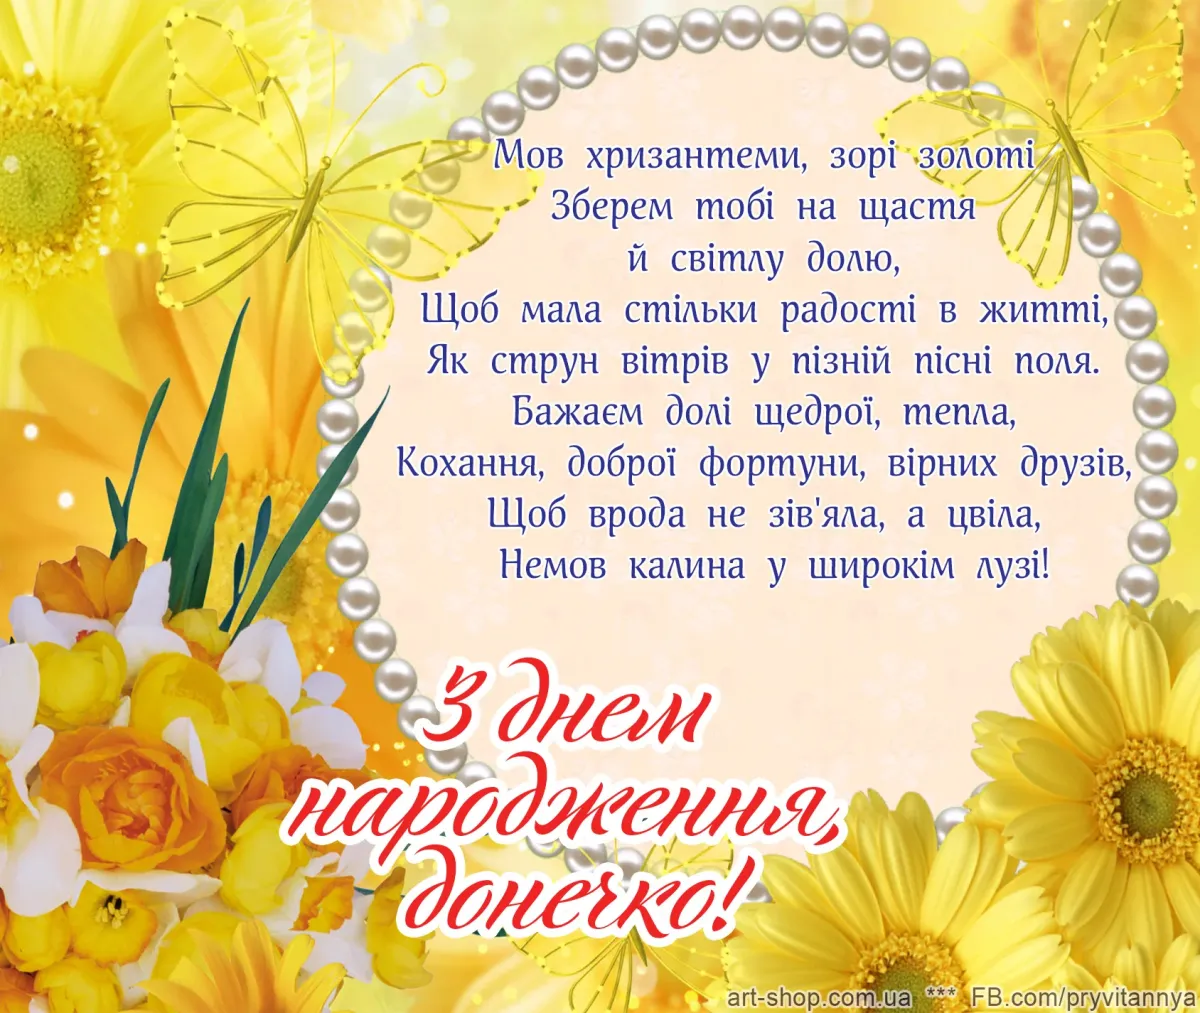 З днем народження. Вітаю з днем народження. Открытка с днем народження на украинском. Зднемнародженя.